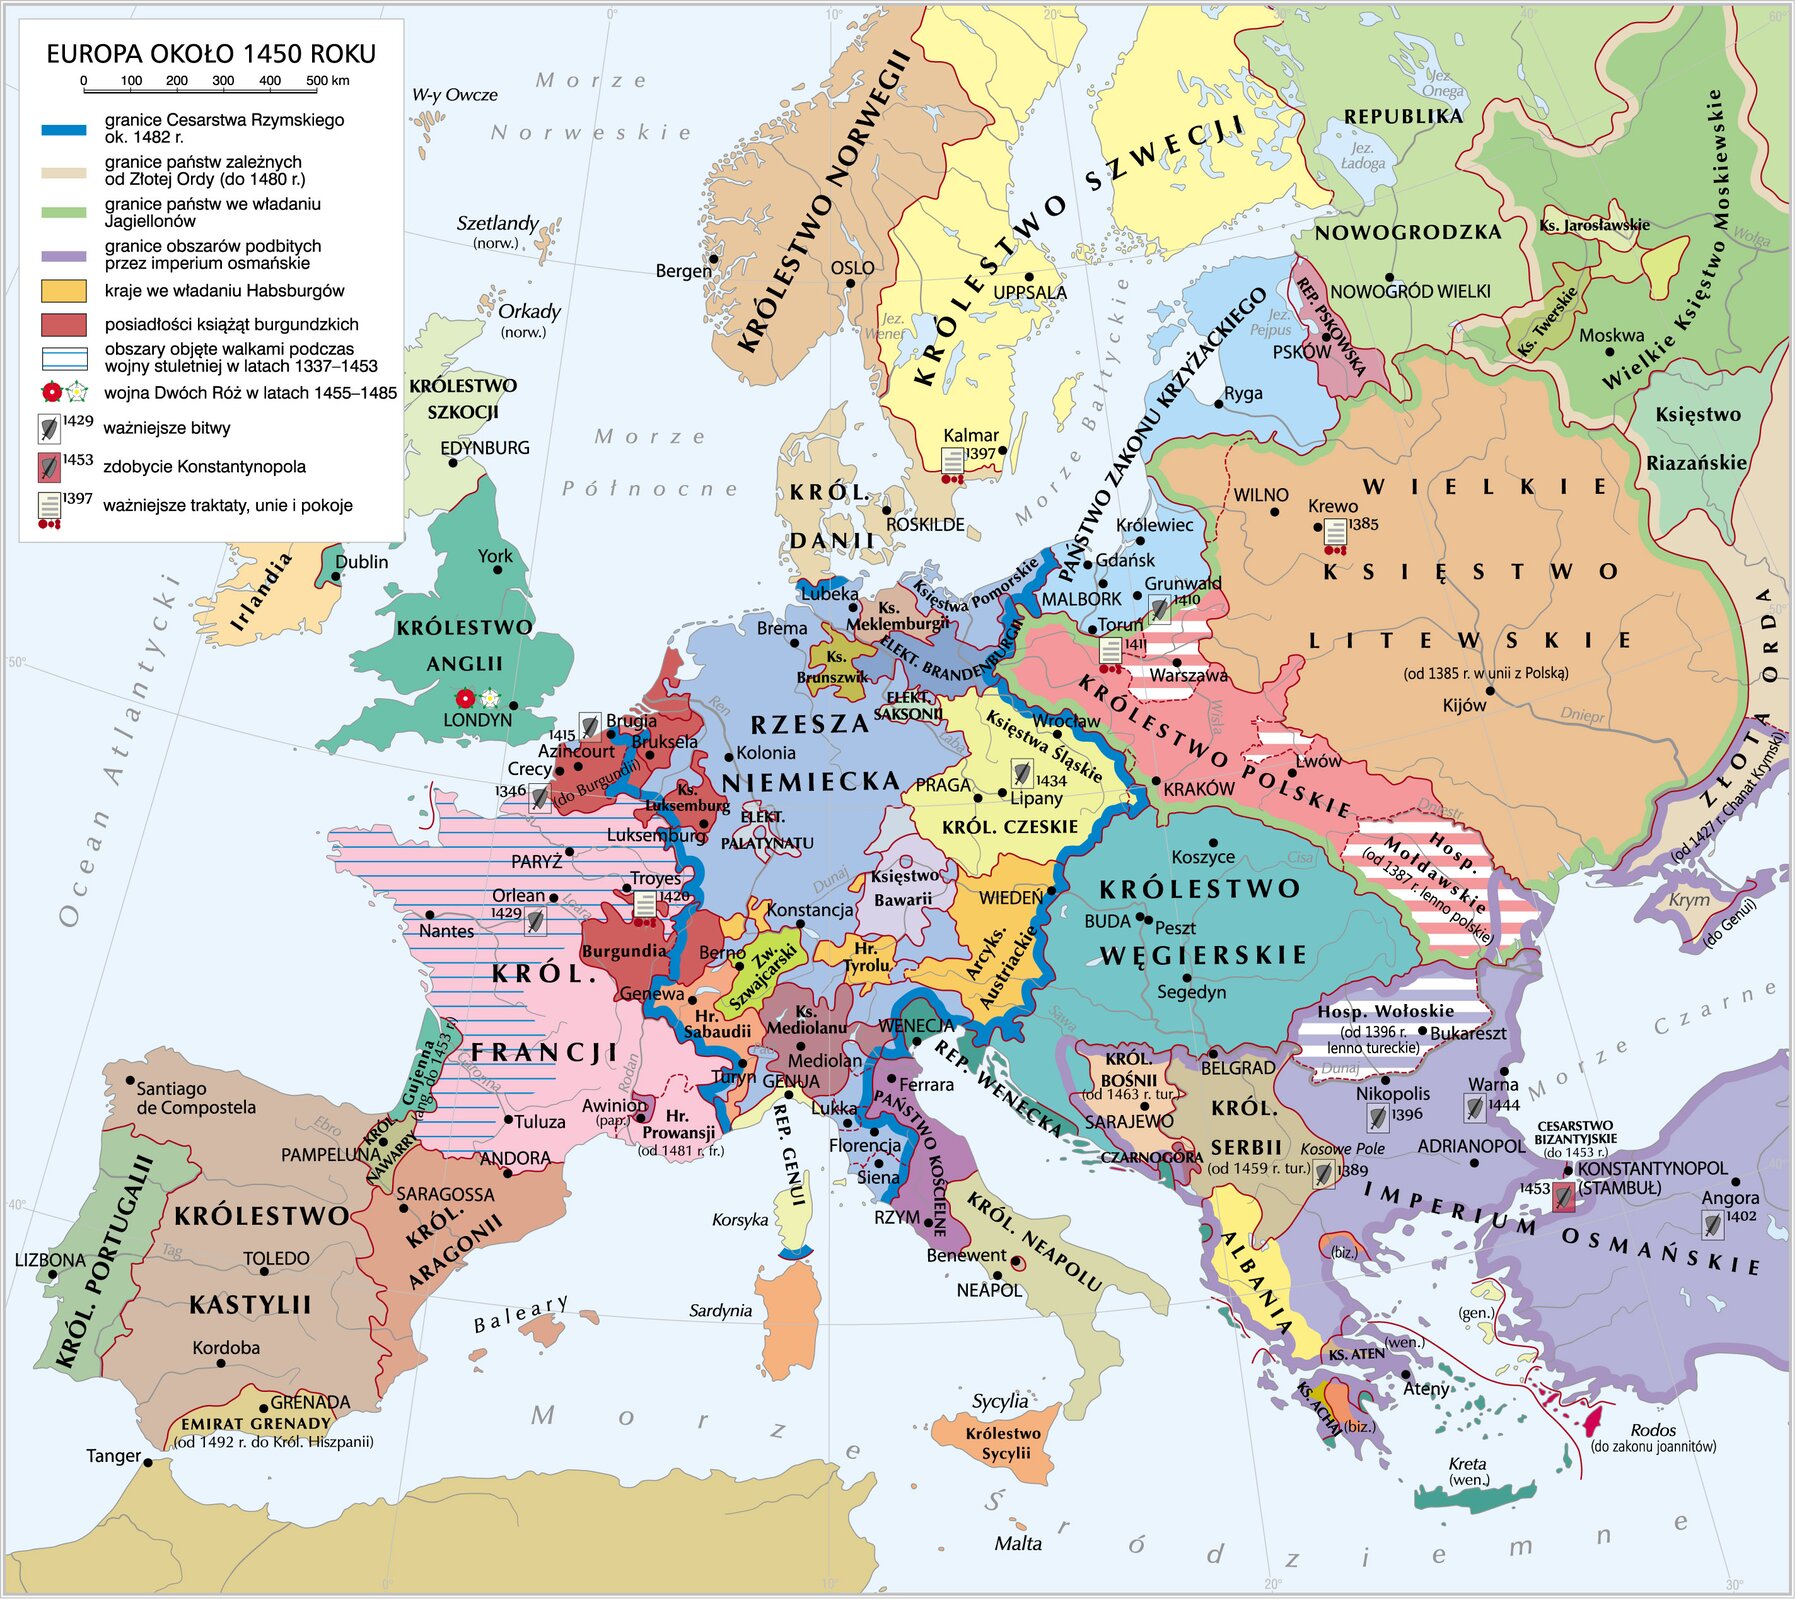 Europa 1450 r. Europa 1450 r. Źródło: Krystian Chariza i zespół, licencja: CC BY 3.0.